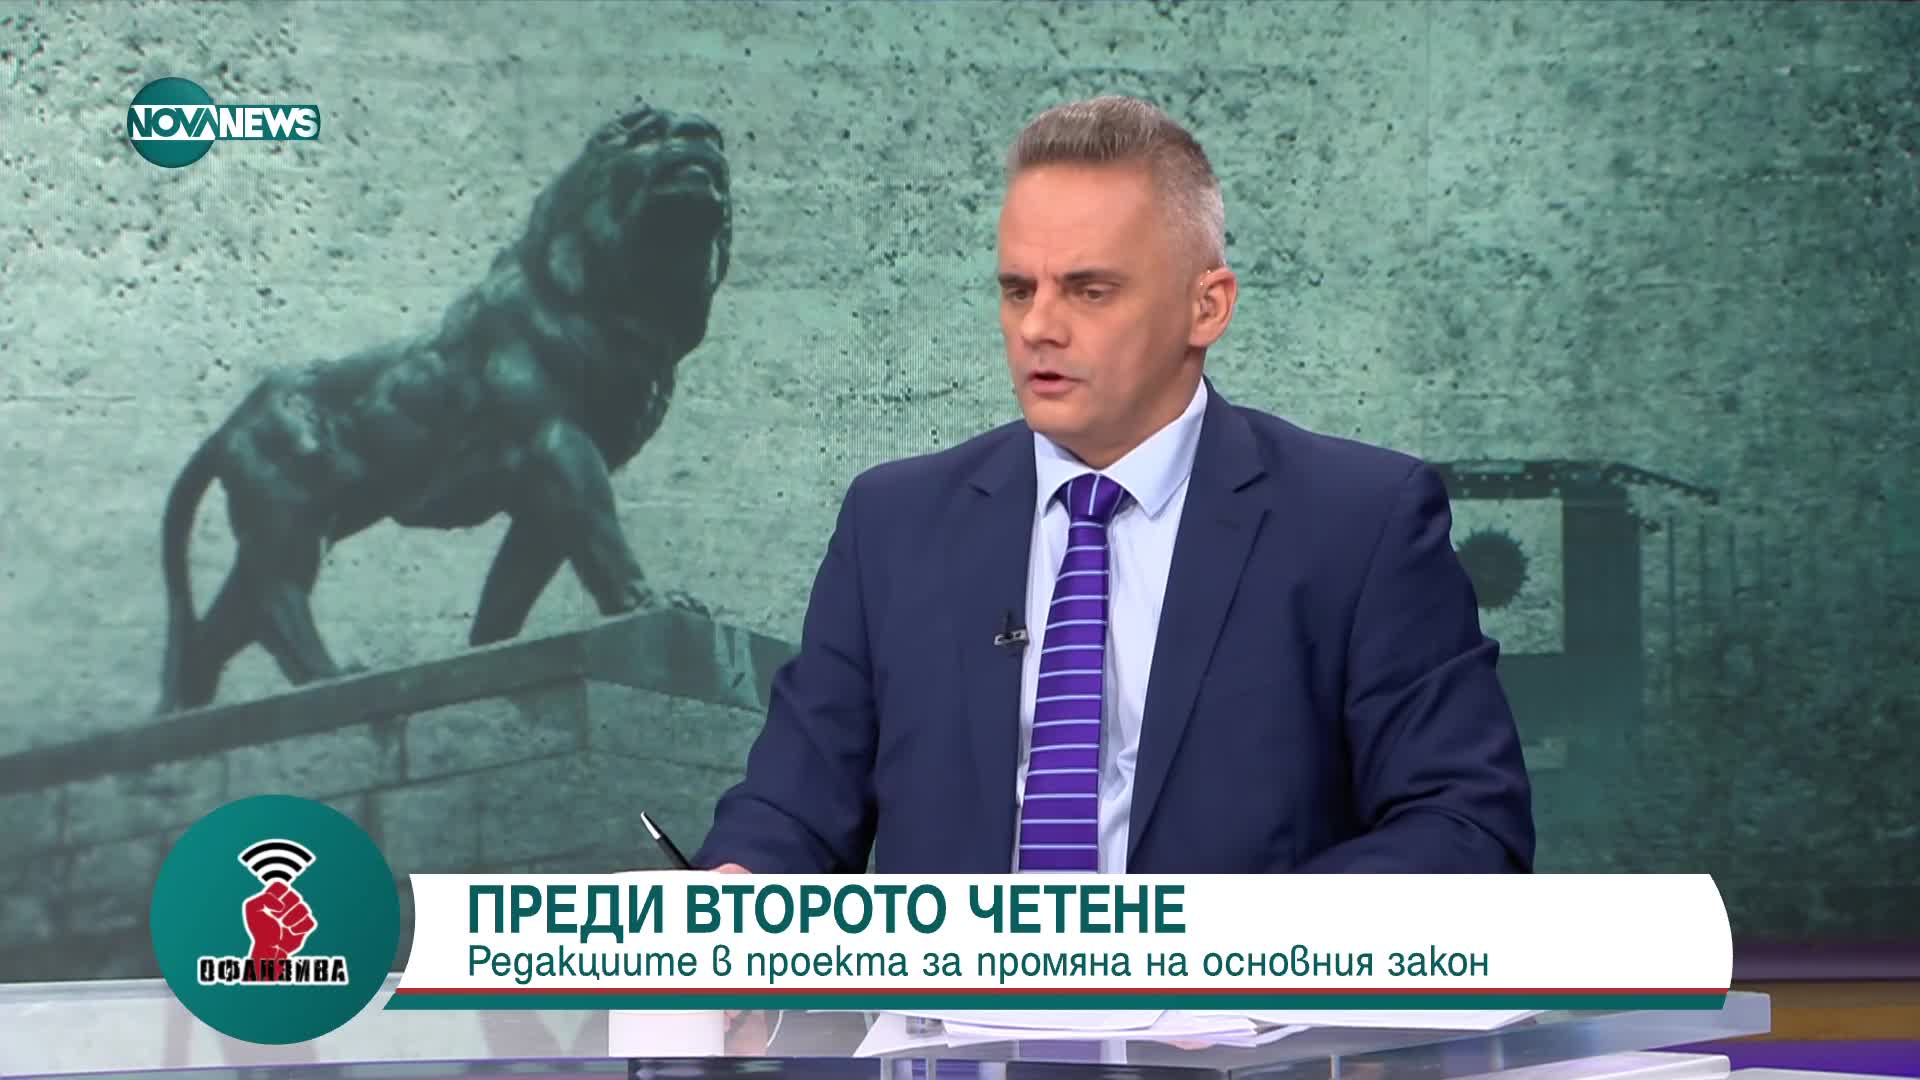 Георги Харизанов: Още е твърде рано за кабинет с премиер Борисов и вицепремиер Пеевски